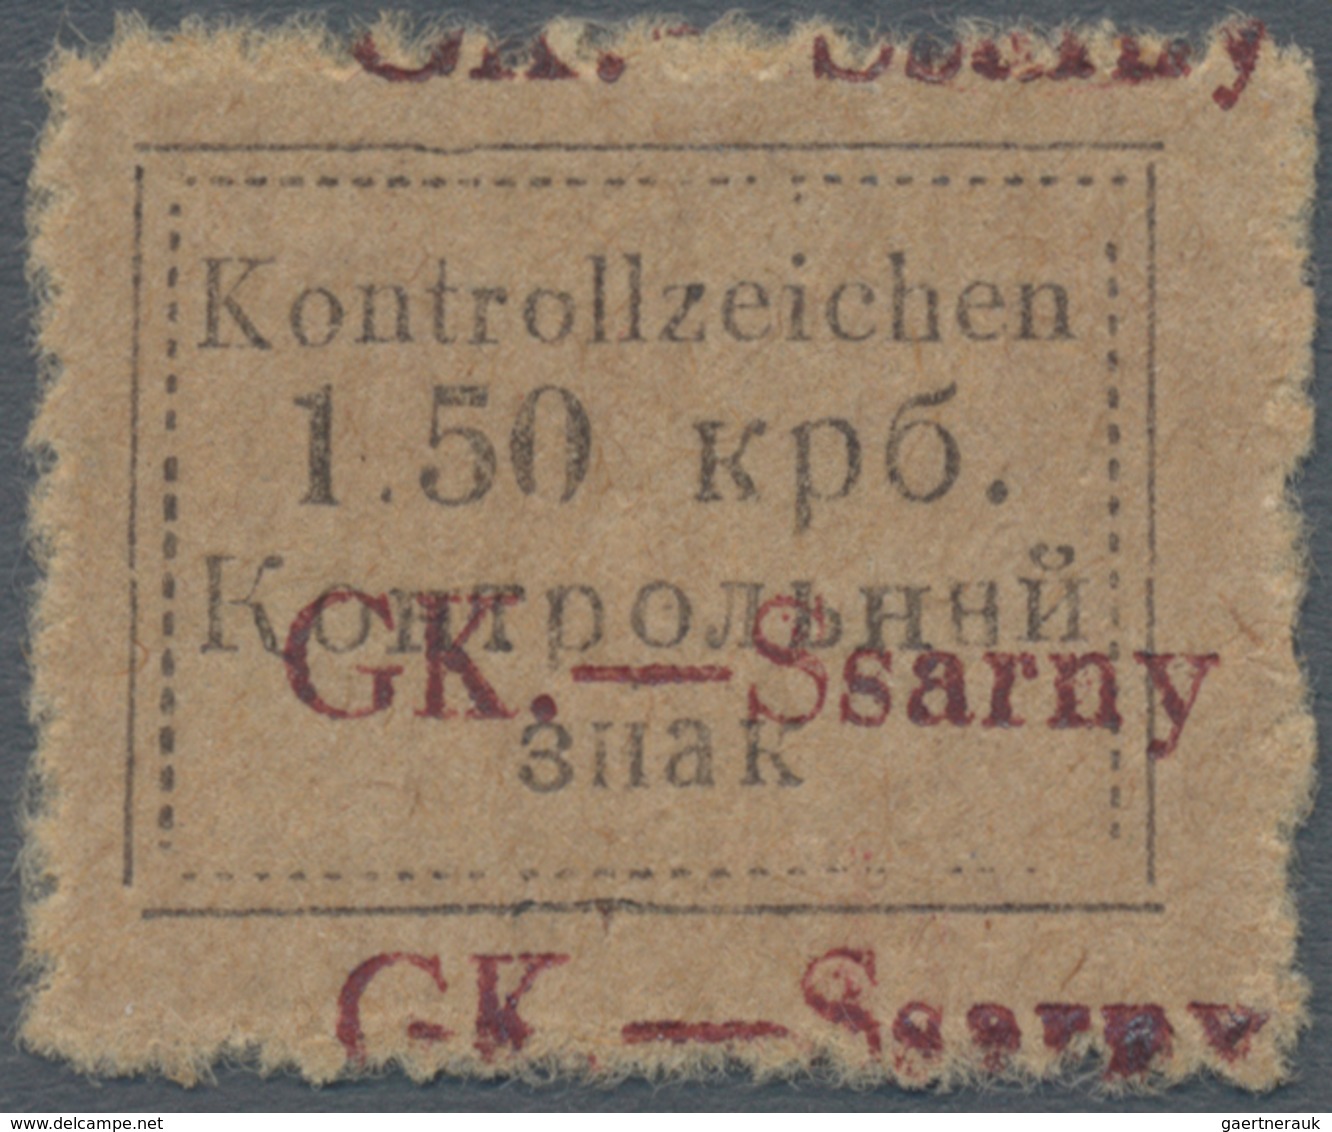 Dt. Besetzung II WK - Ukraine - Sarny: 1941. Kontrollzeichen 1.50 Krb "GK.-Ssarny" Mit Doppeltem Auf - Occupazione 1938 – 45